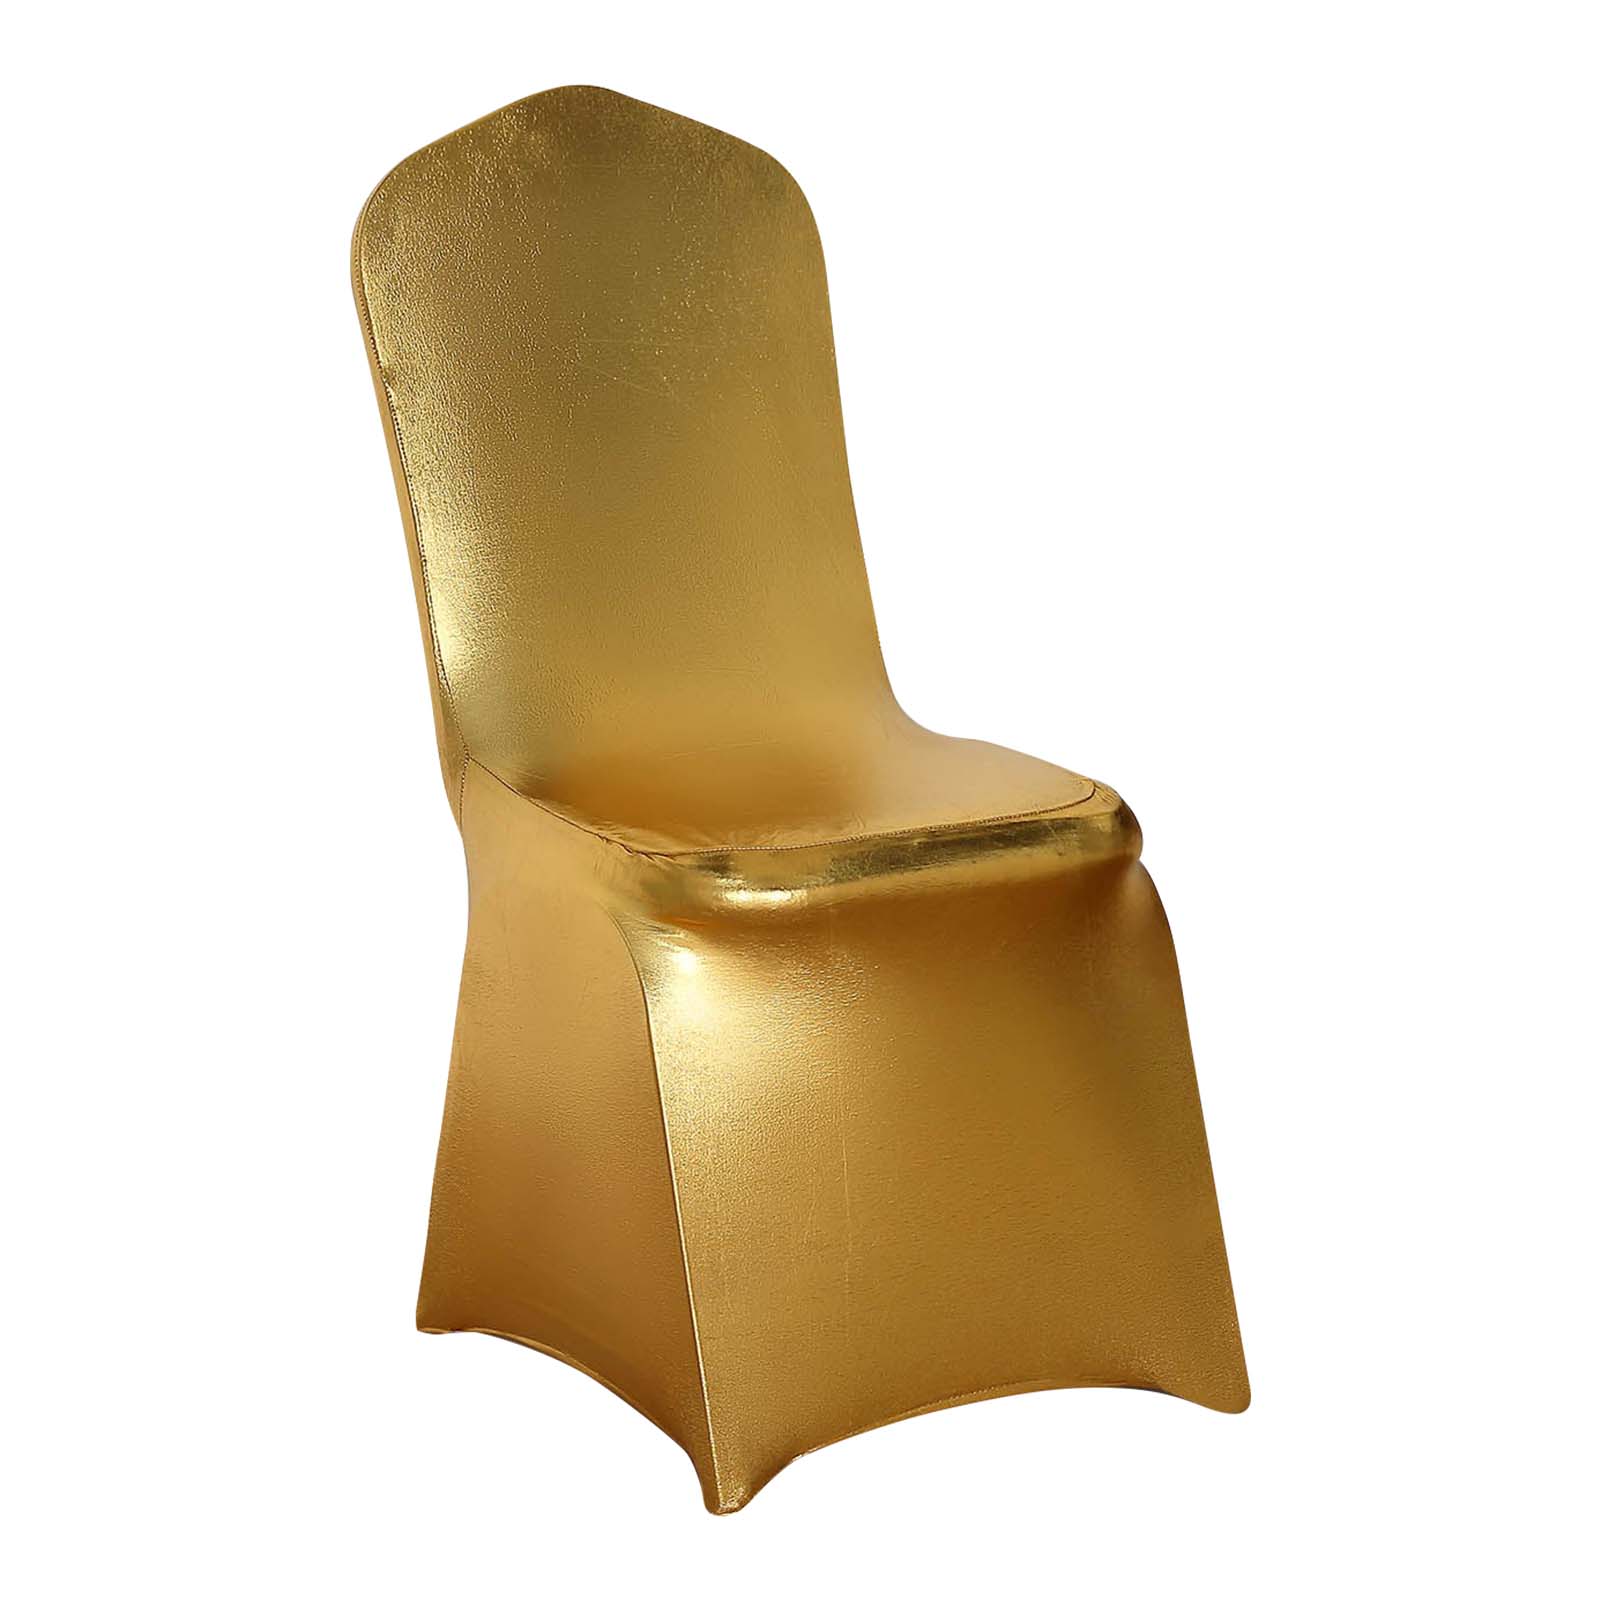 Spandex banquet chair cover